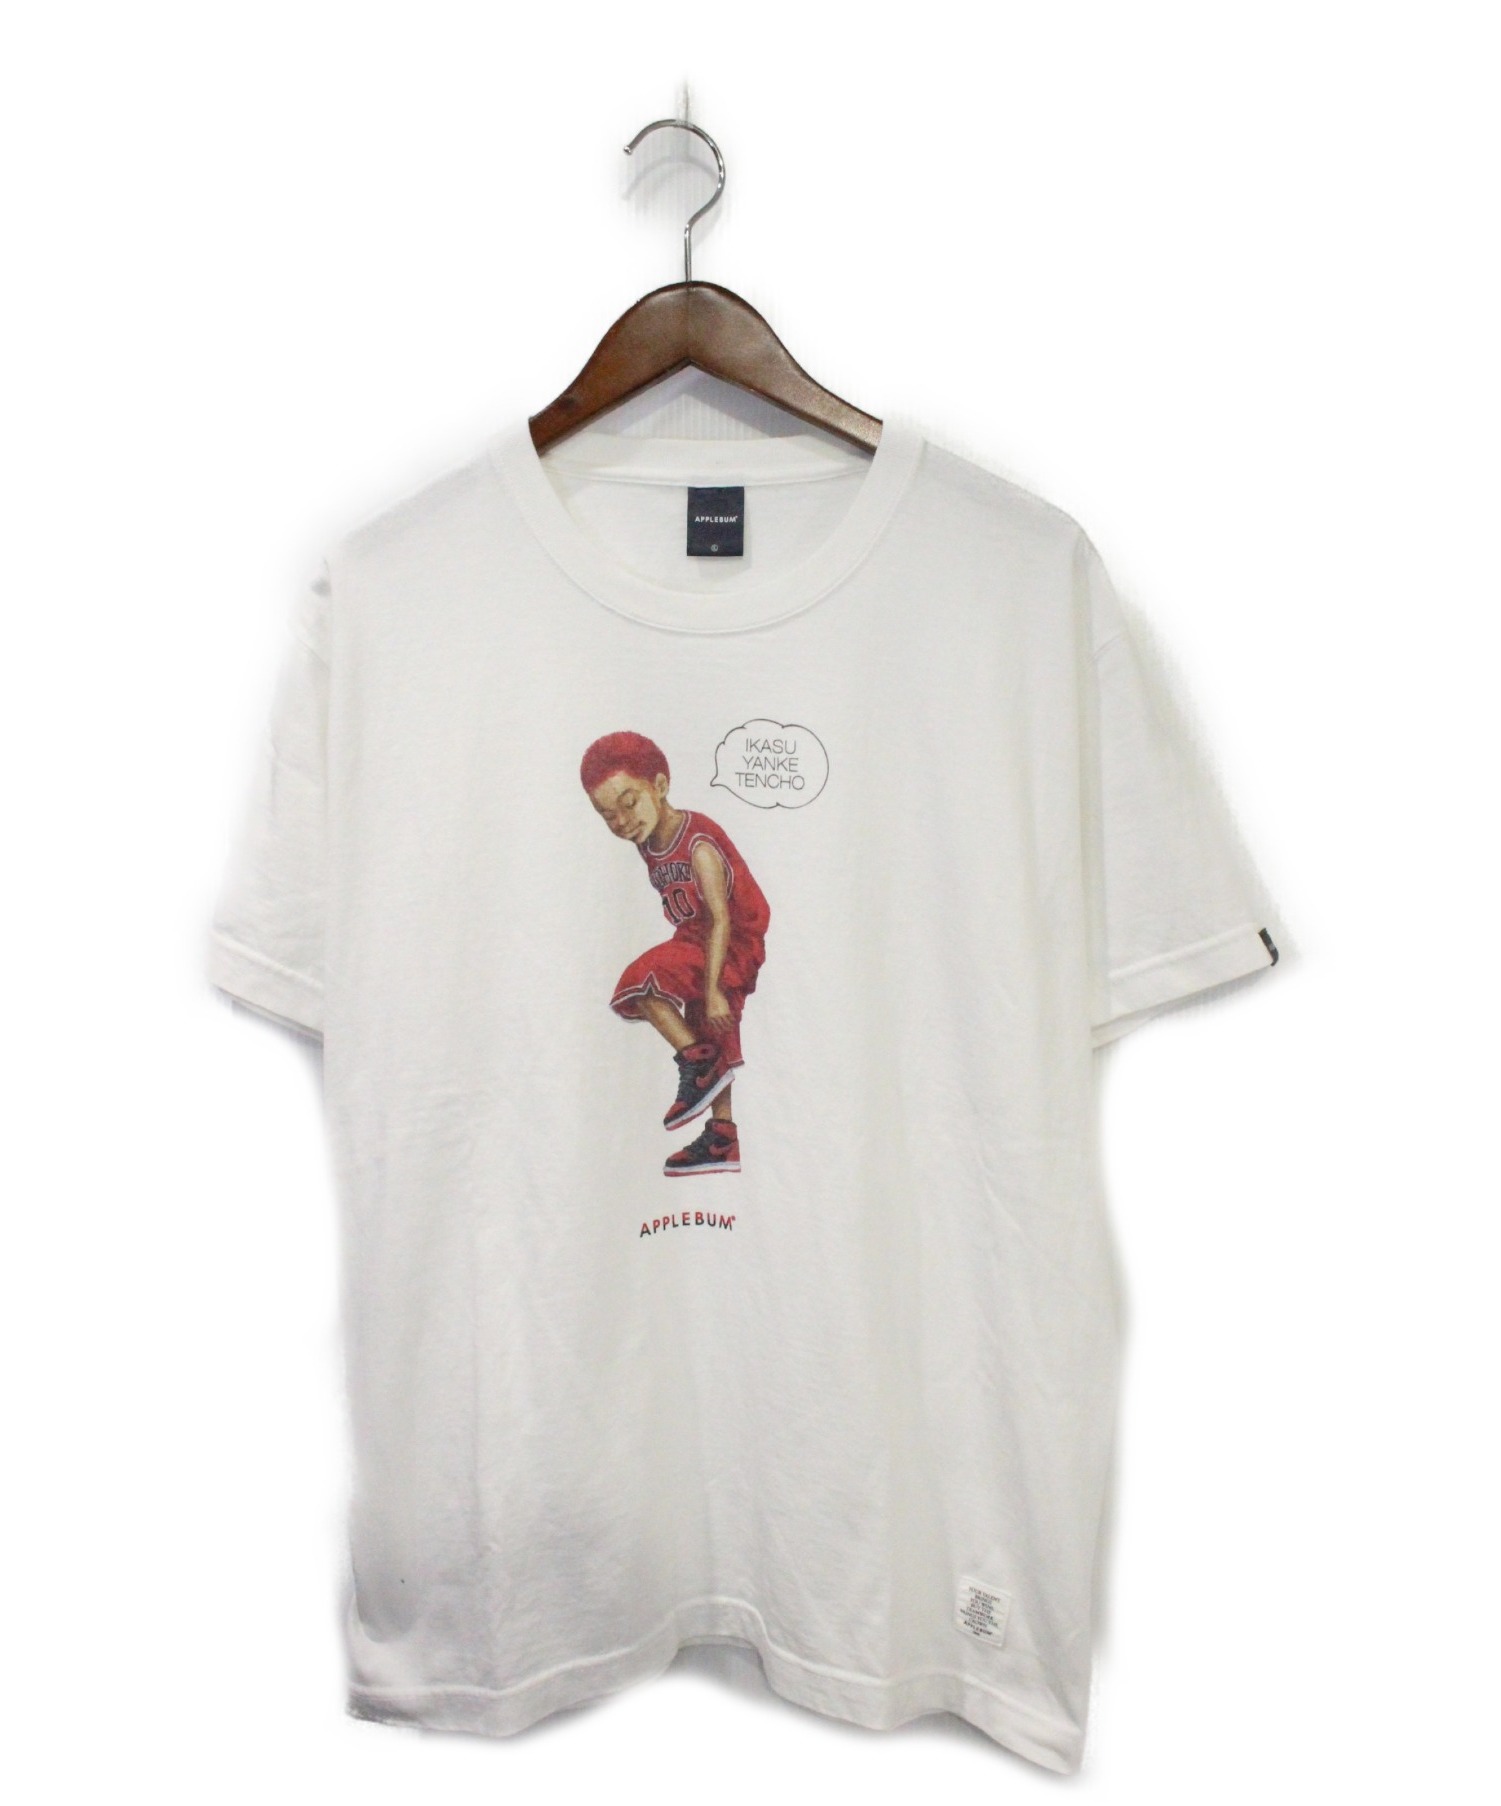 2XL "DANKO 10" T-shirt アップルバム  applebum